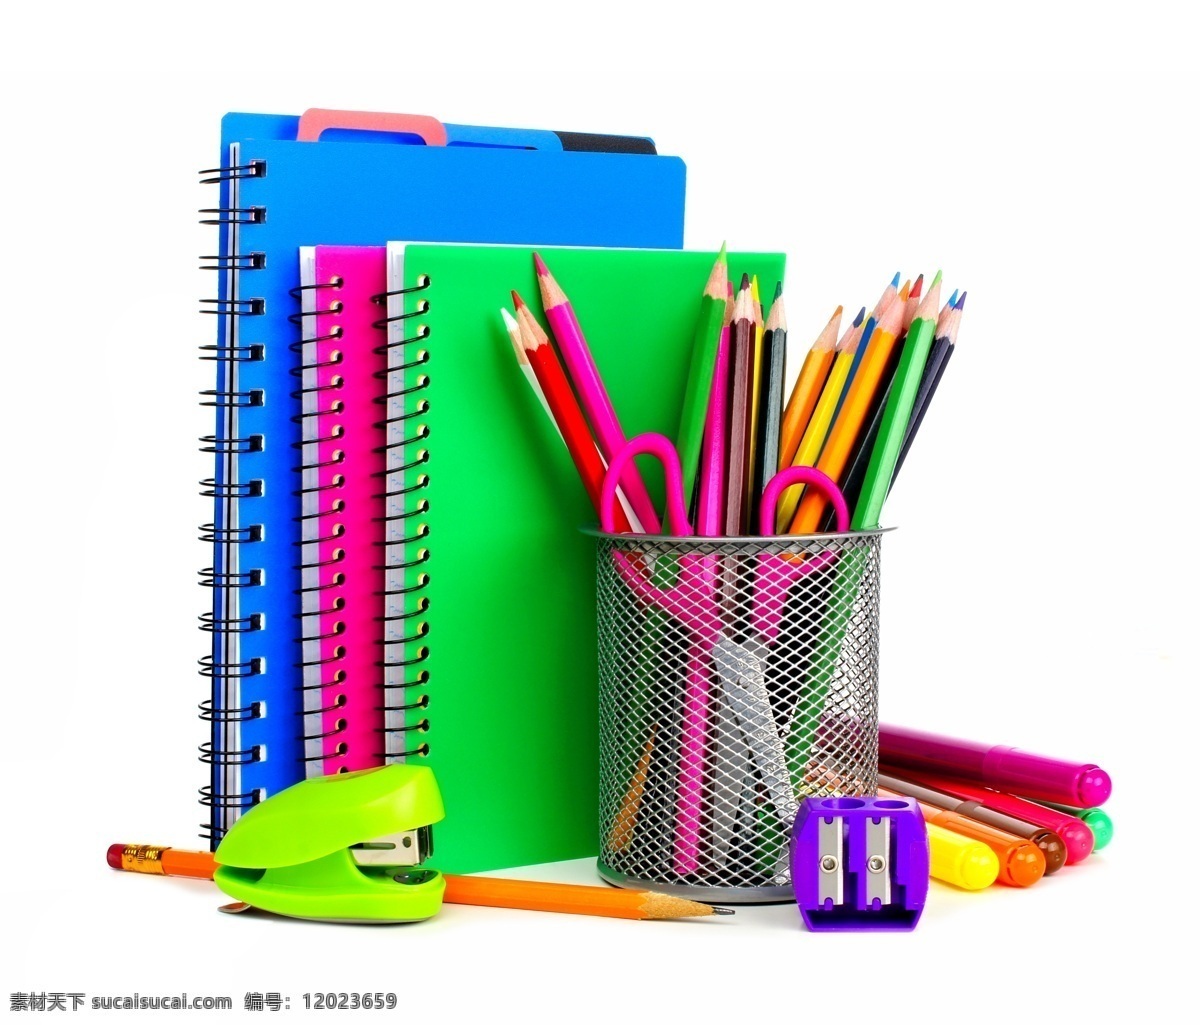 笔记本 笔筒 铅笔 订书机 彩色铅笔 画笔 蜡笔 文具 学习用品 学习教育 办公学习 生活百科